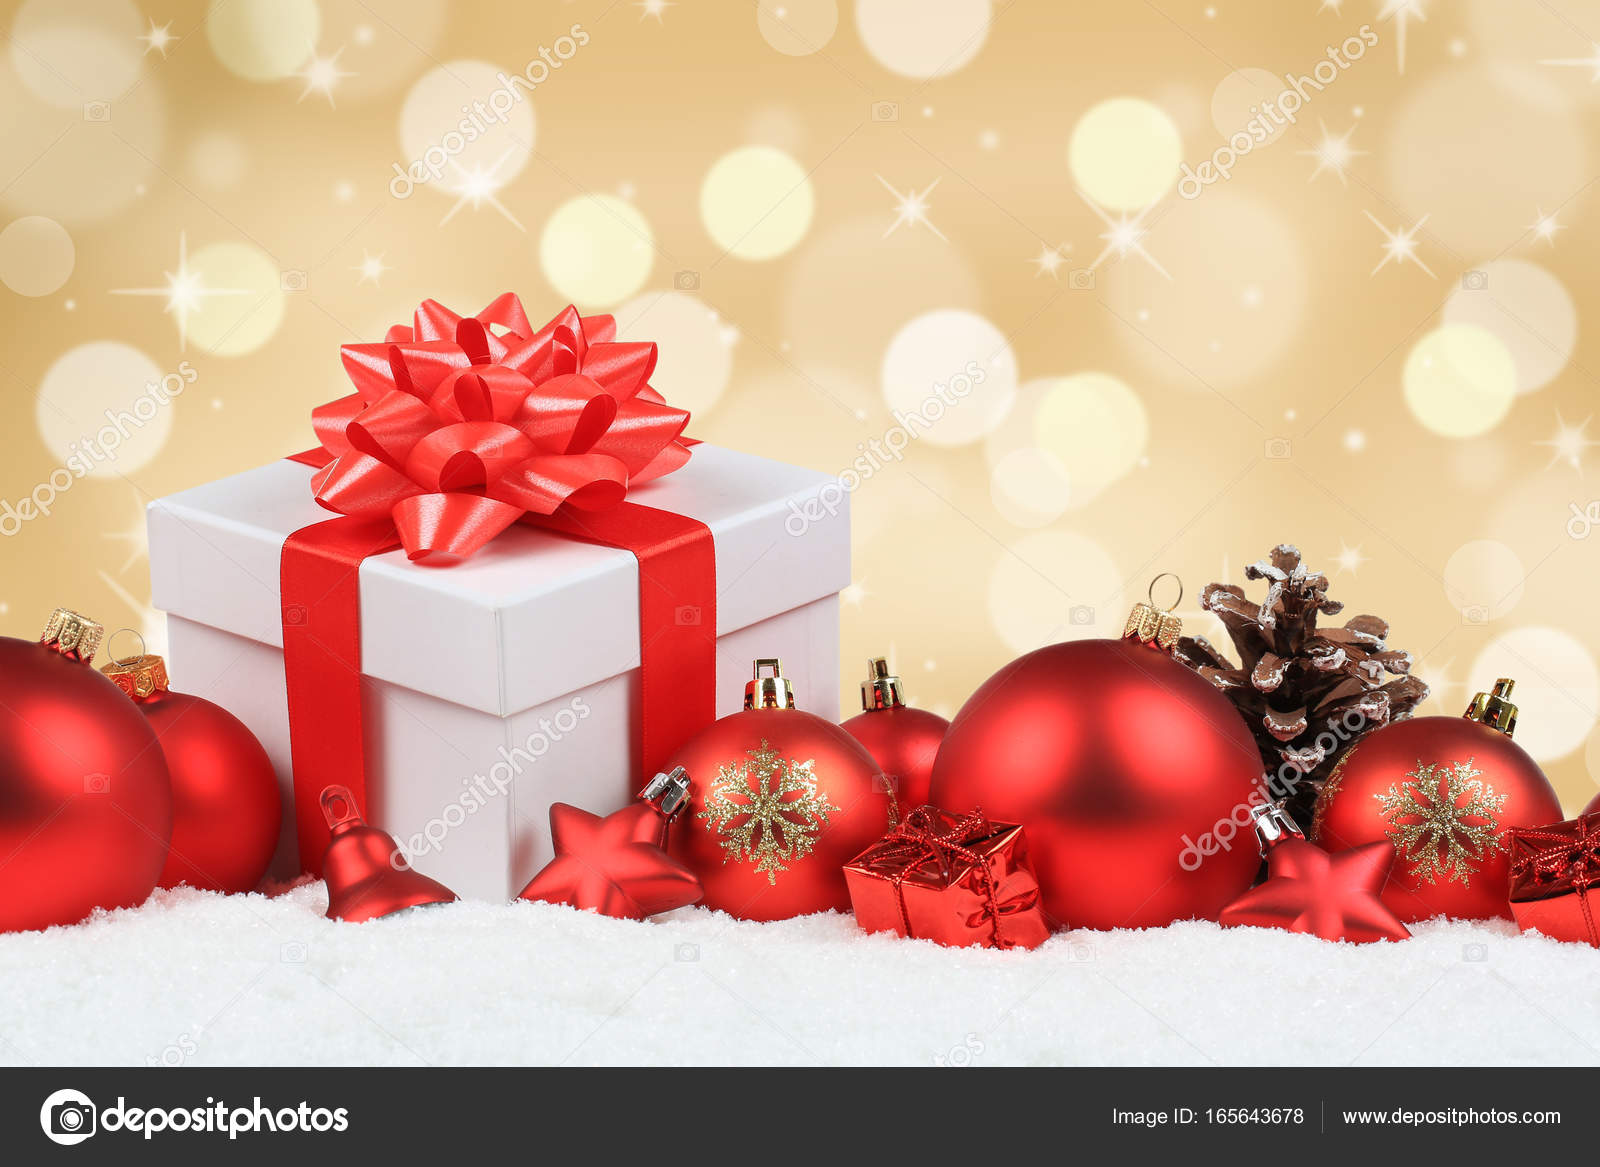 Stock Regali Di Natale.Regali Di Natale Presenta Palle D Oro Decorazione Neve Copyspace Foto Stock C Boarding2now 165643678